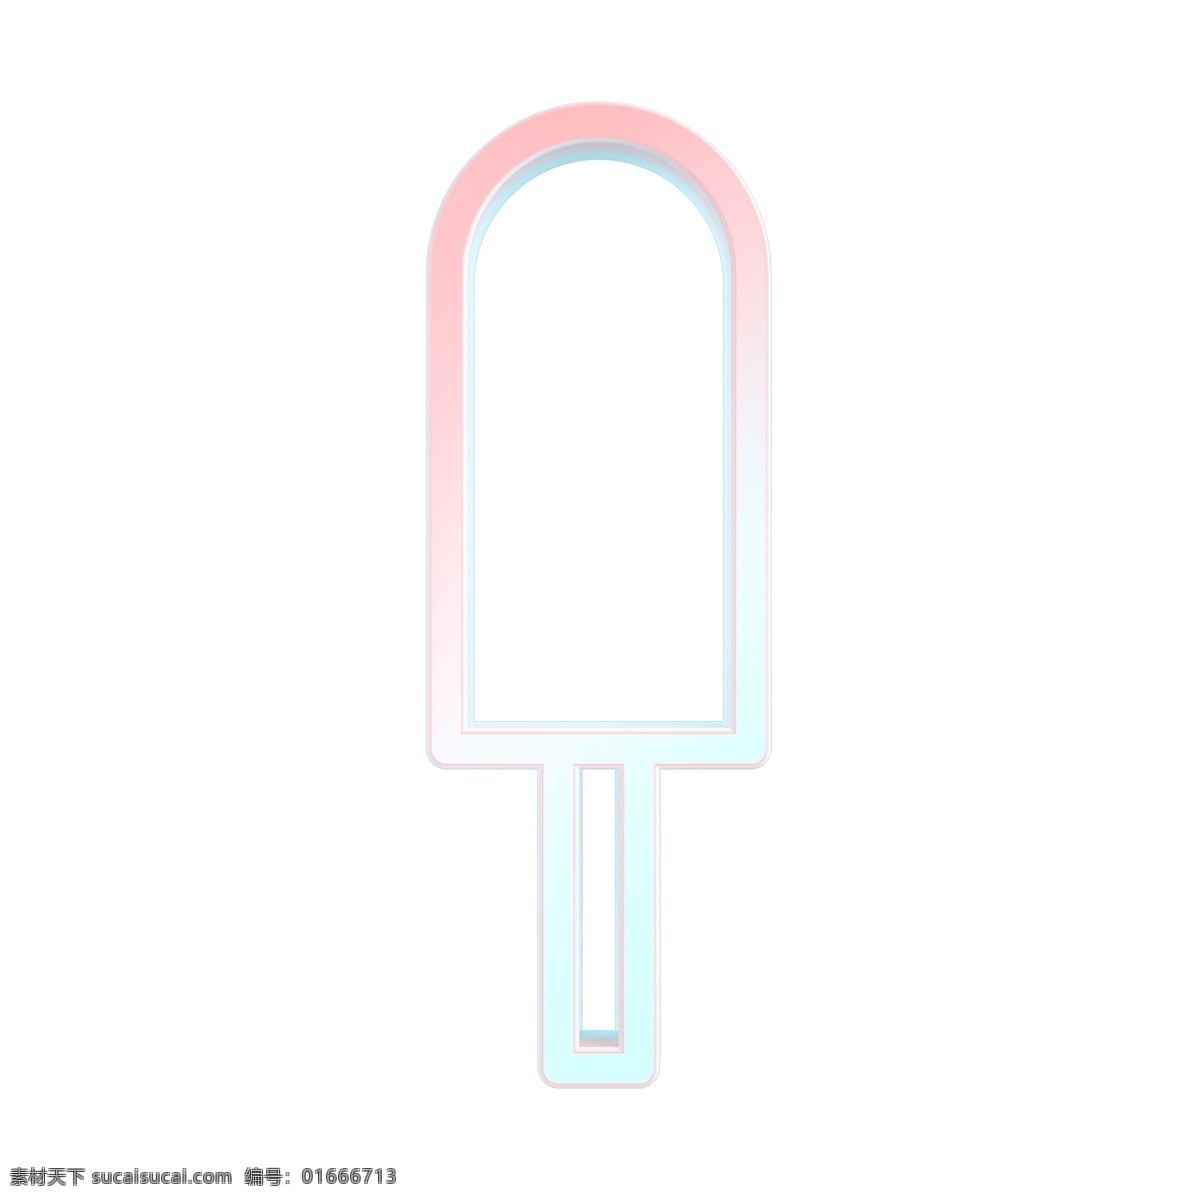 夏日雪糕图标 马卡龙色系 夏季常用图标 立体 青粉色